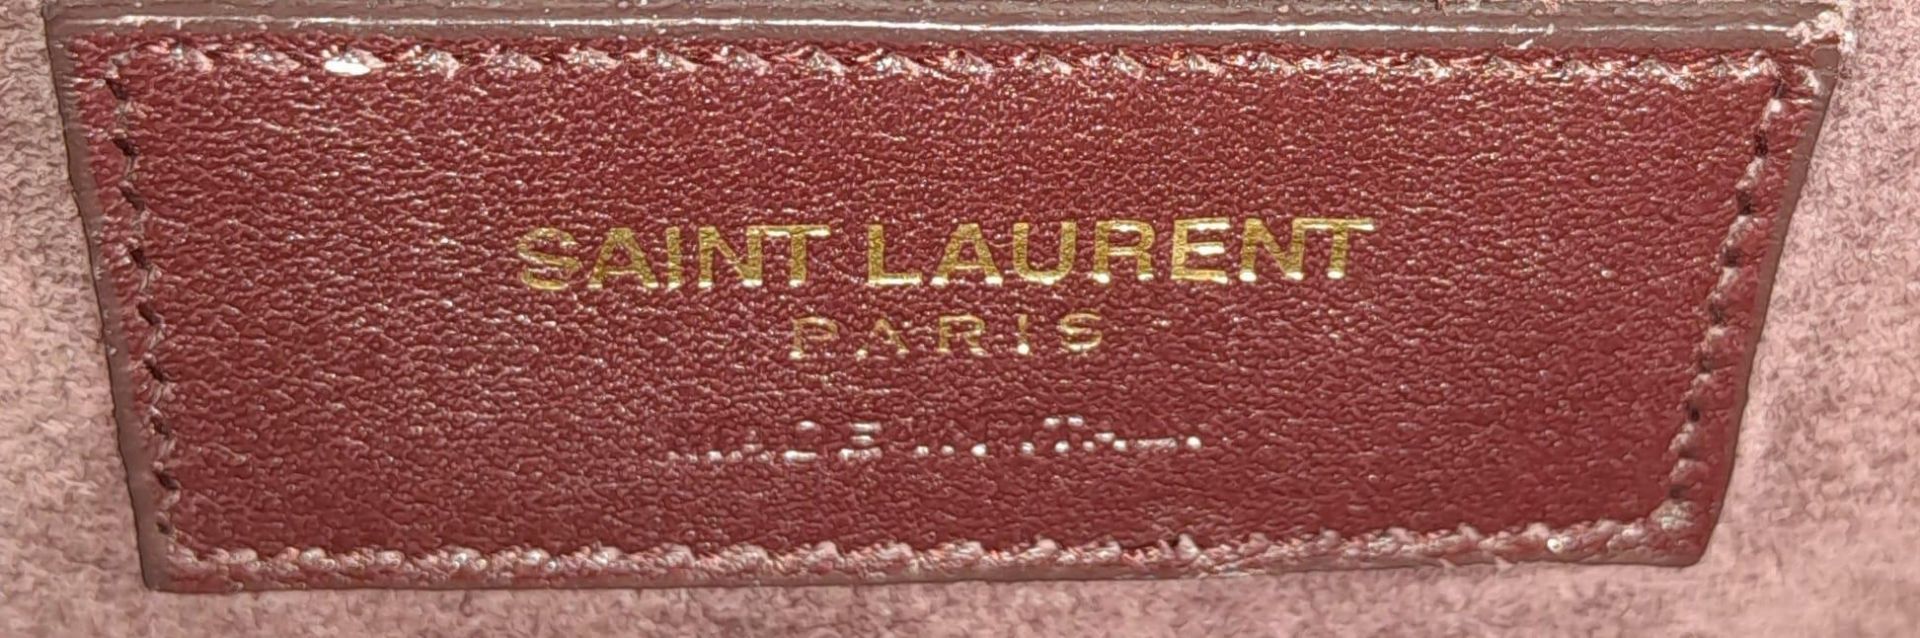 A Saint Laurent Sac De Jour Burgundy Handbag. Leather Exterior, Gold Tone Hardware, Double Handle in - Bild 9 aus 11